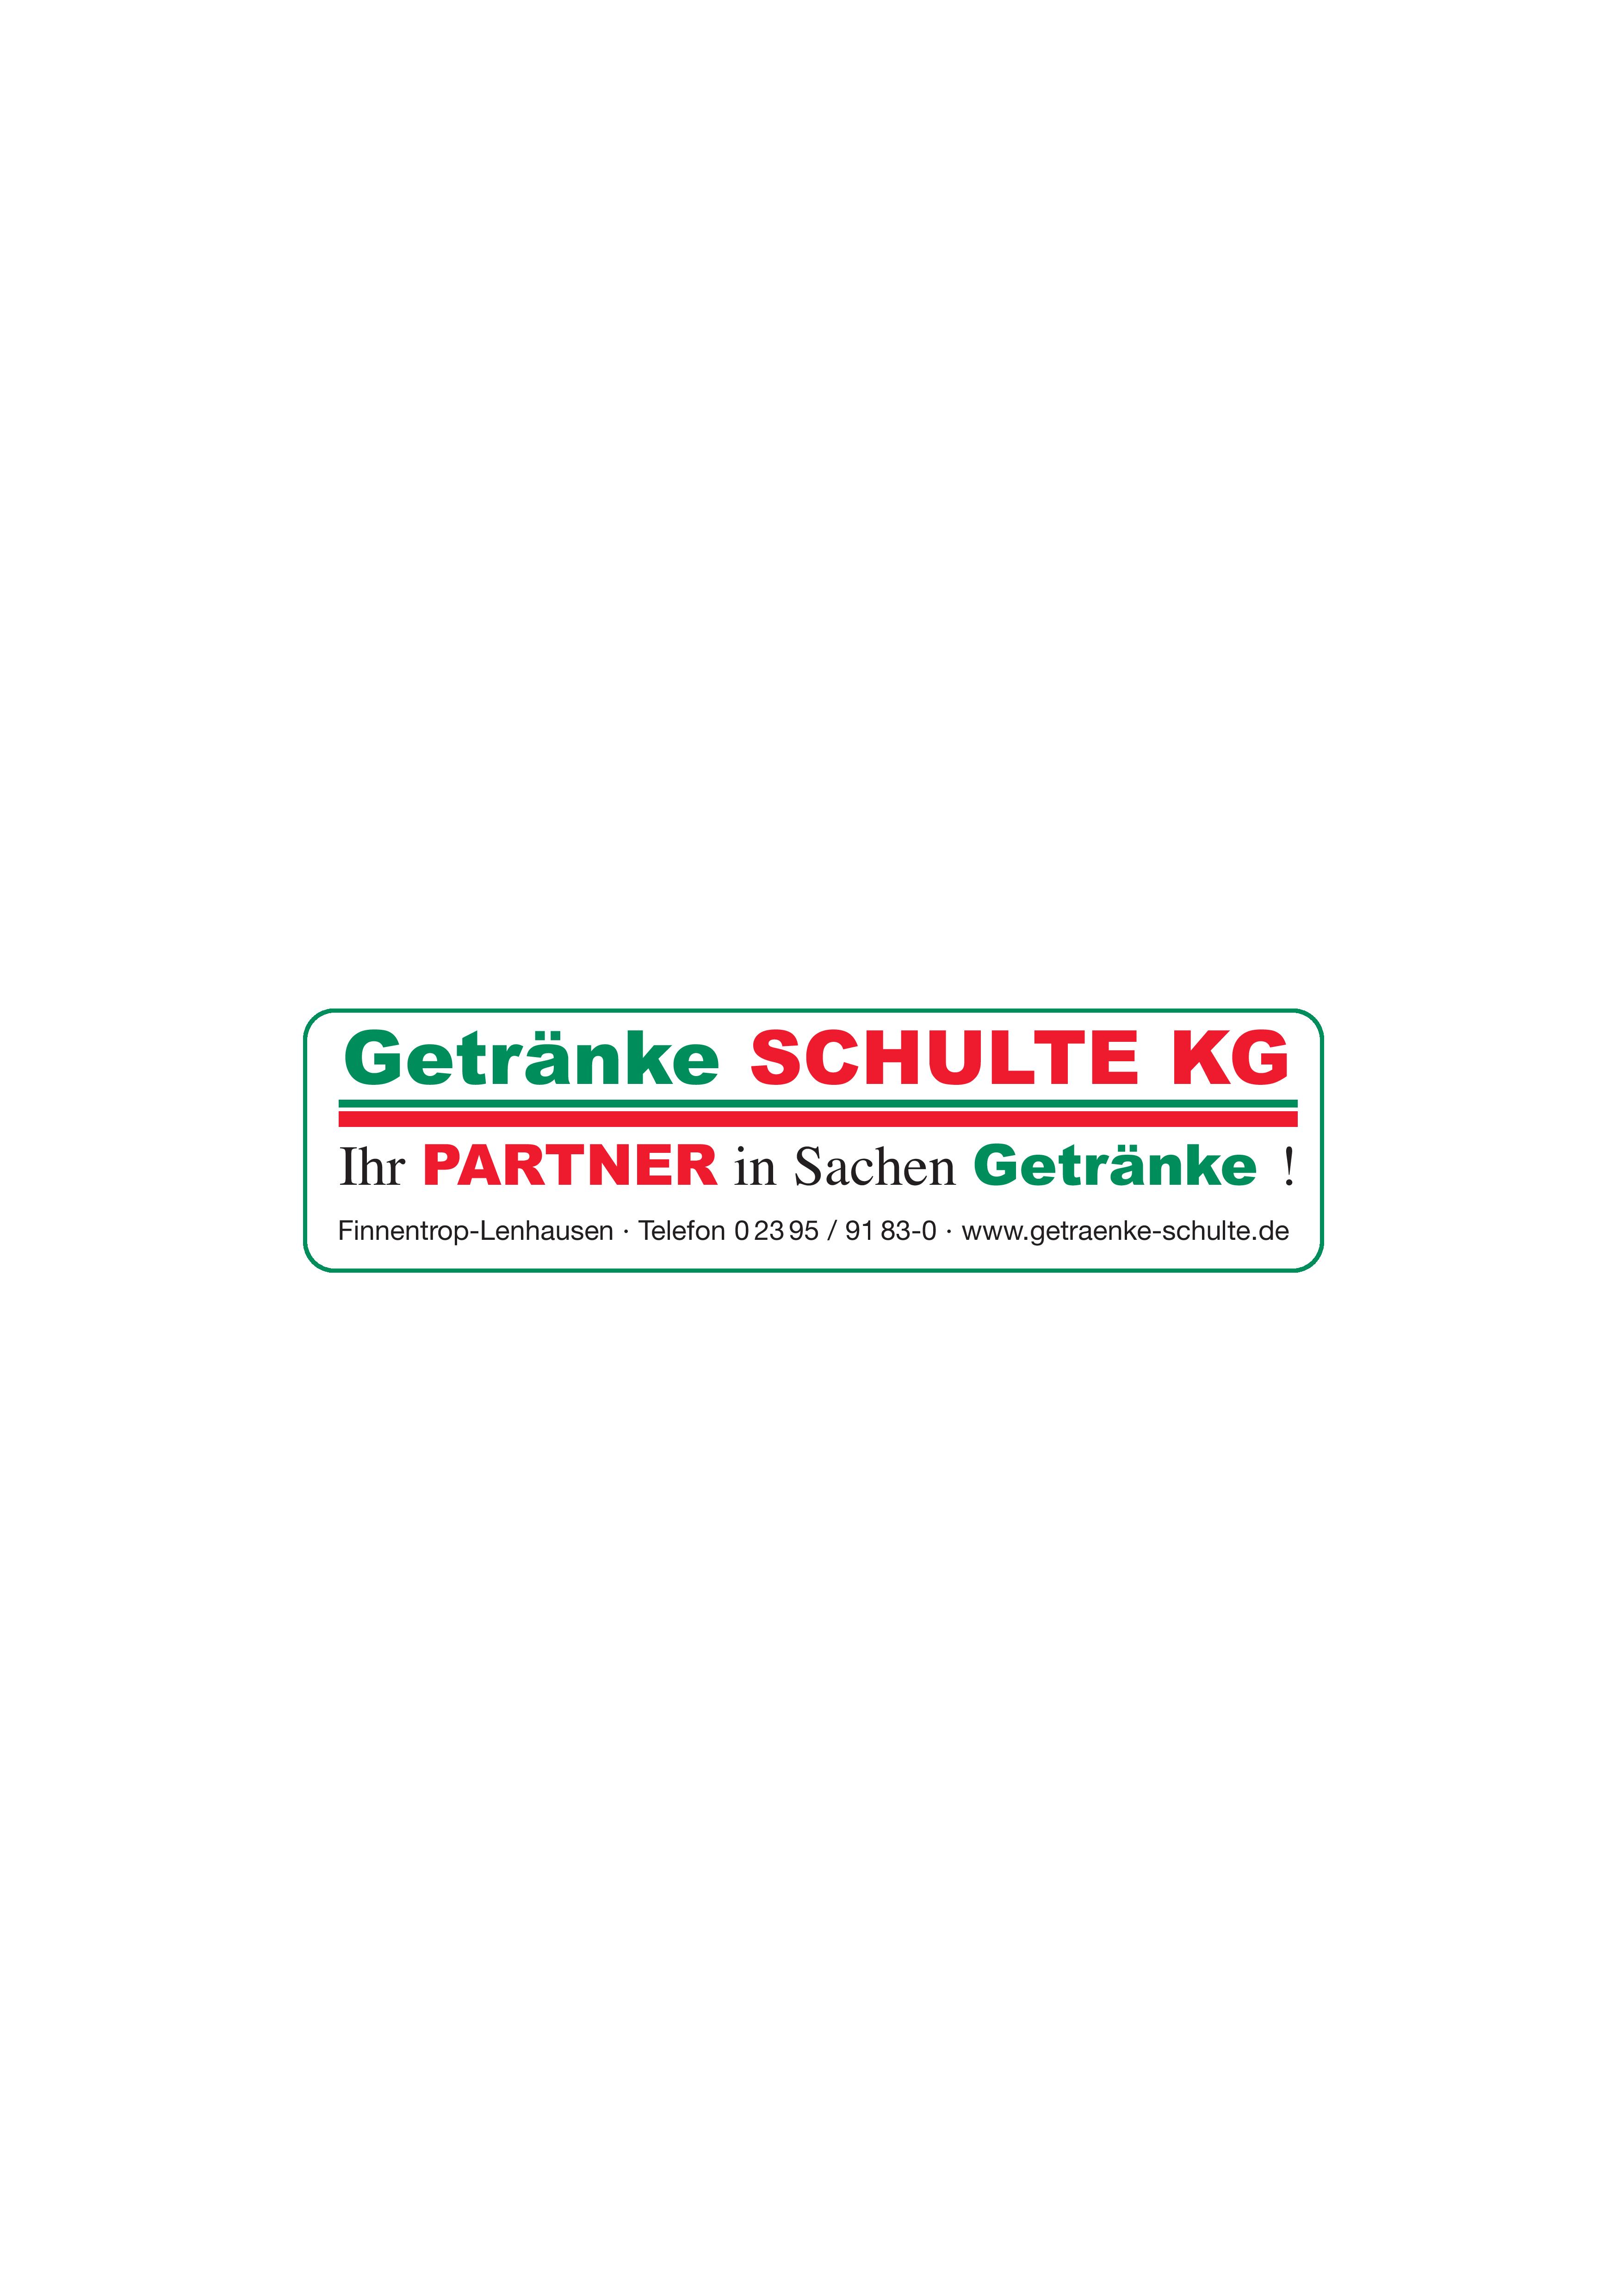 (c) Getraenke-schulte.de